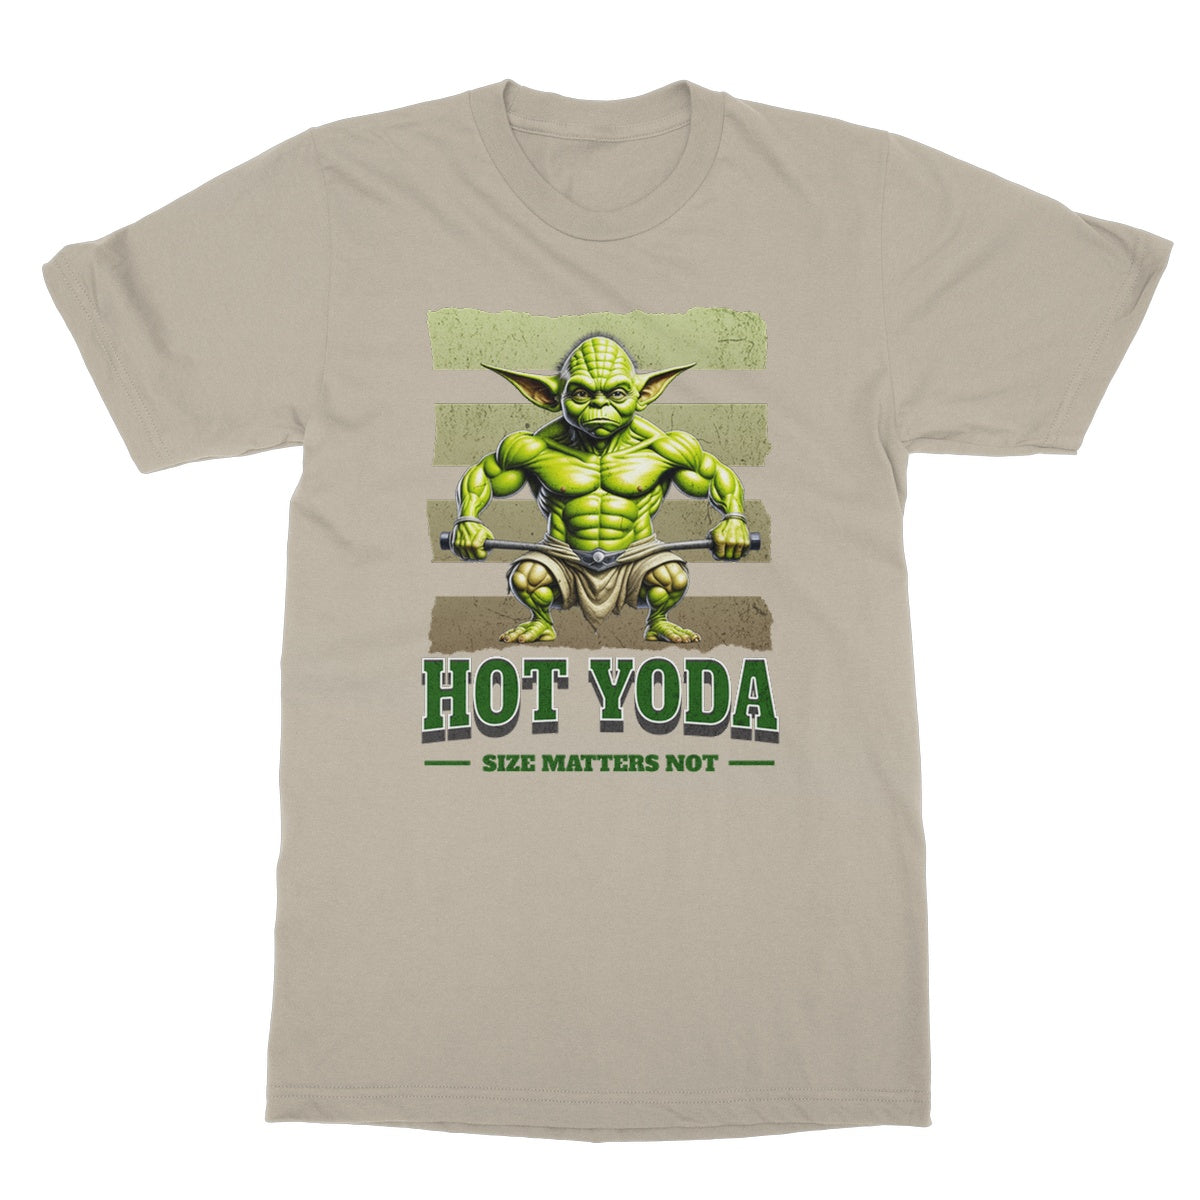 hot yoda t shirt sand